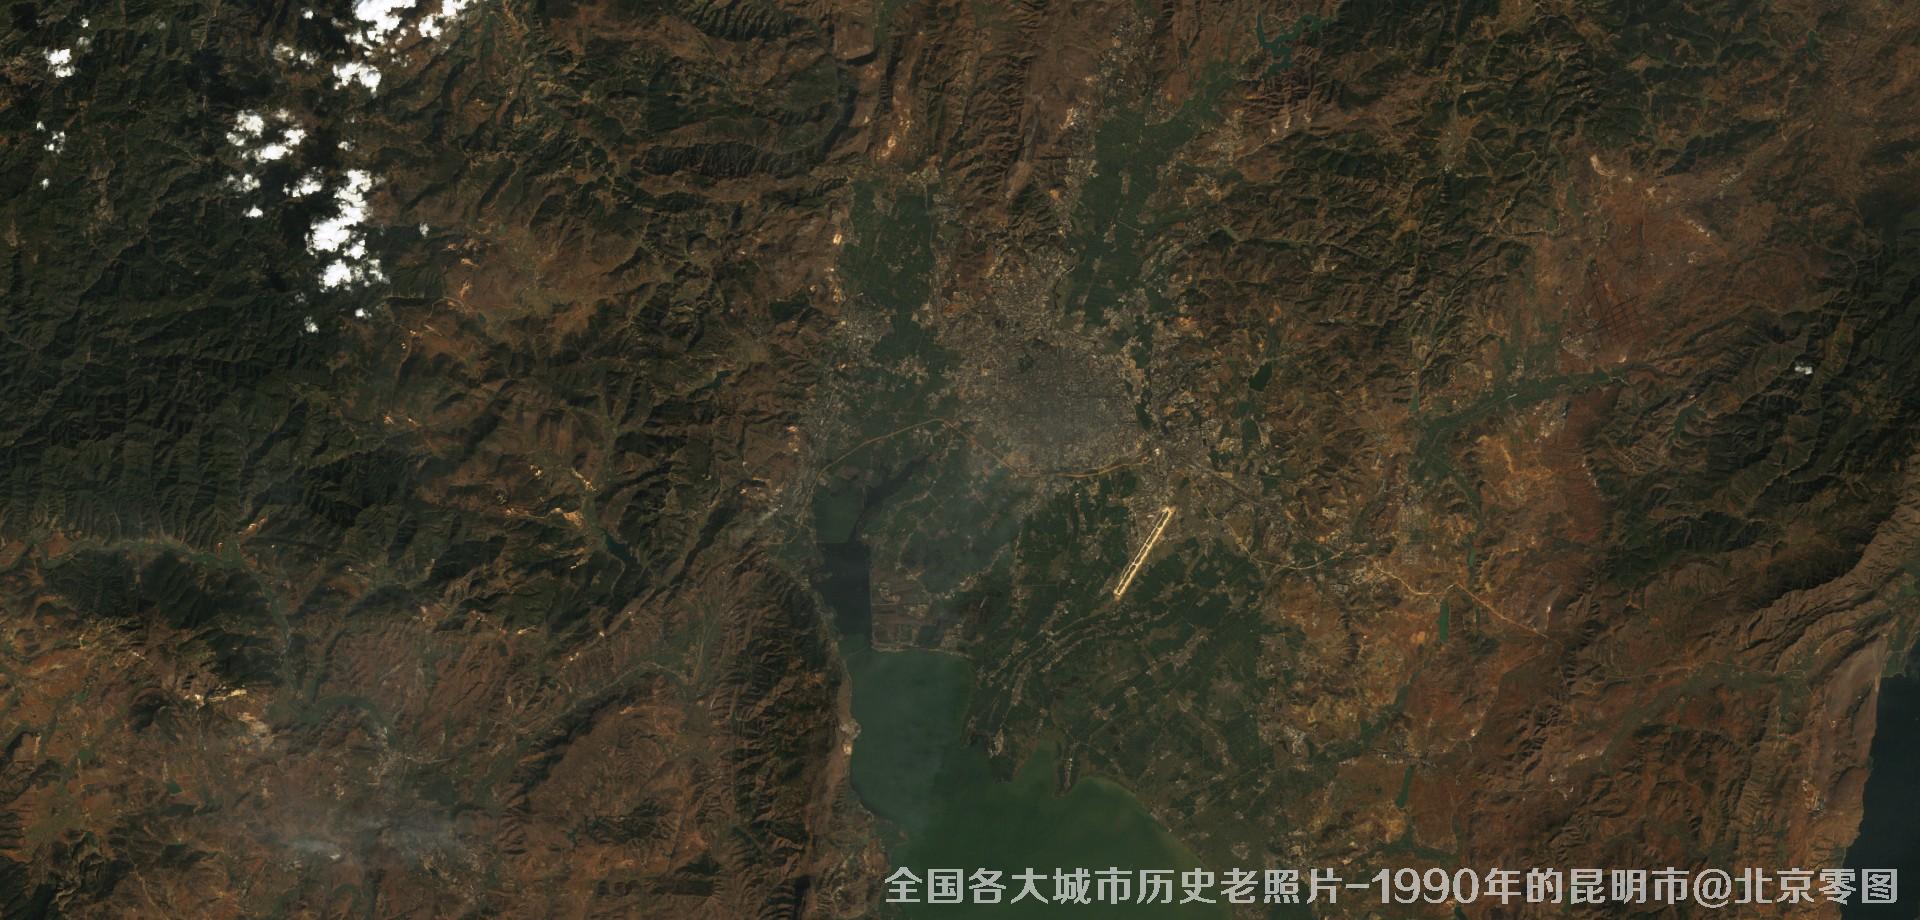 美国Landsat卫星拍摄的1990年的云南省昆明市历史卫星影像图